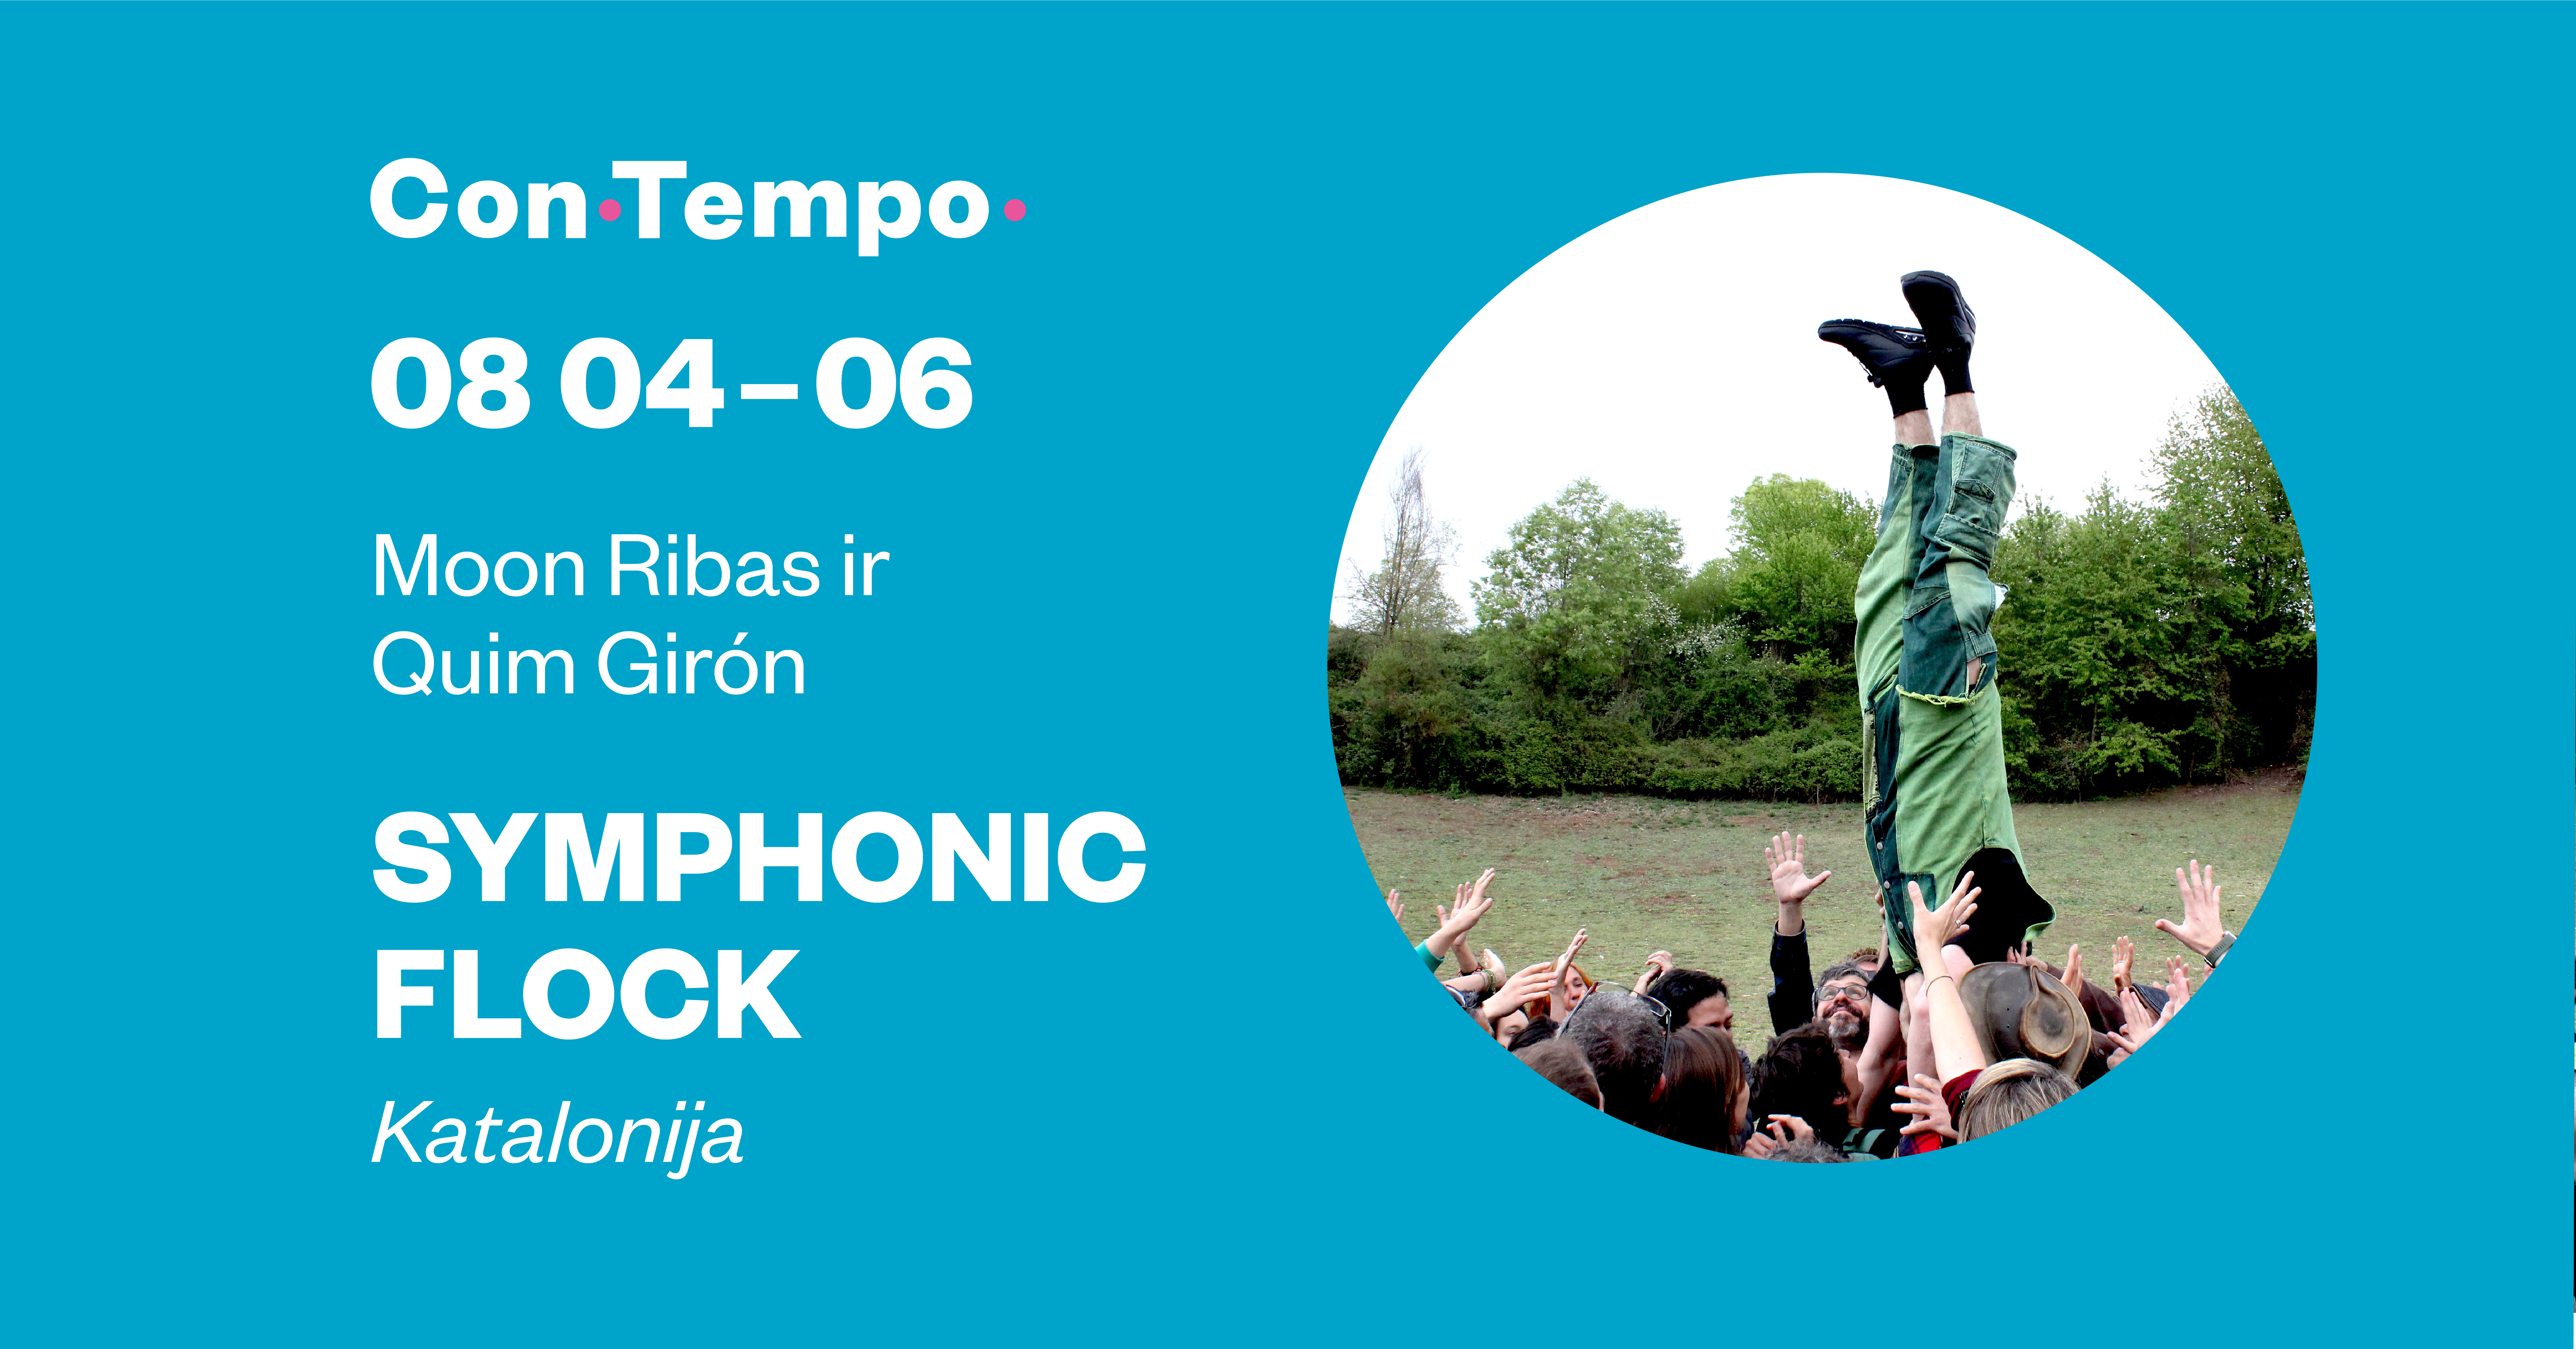 ConTempo festival: Symphonic Flock | Moon Ribas ir Quim Girón